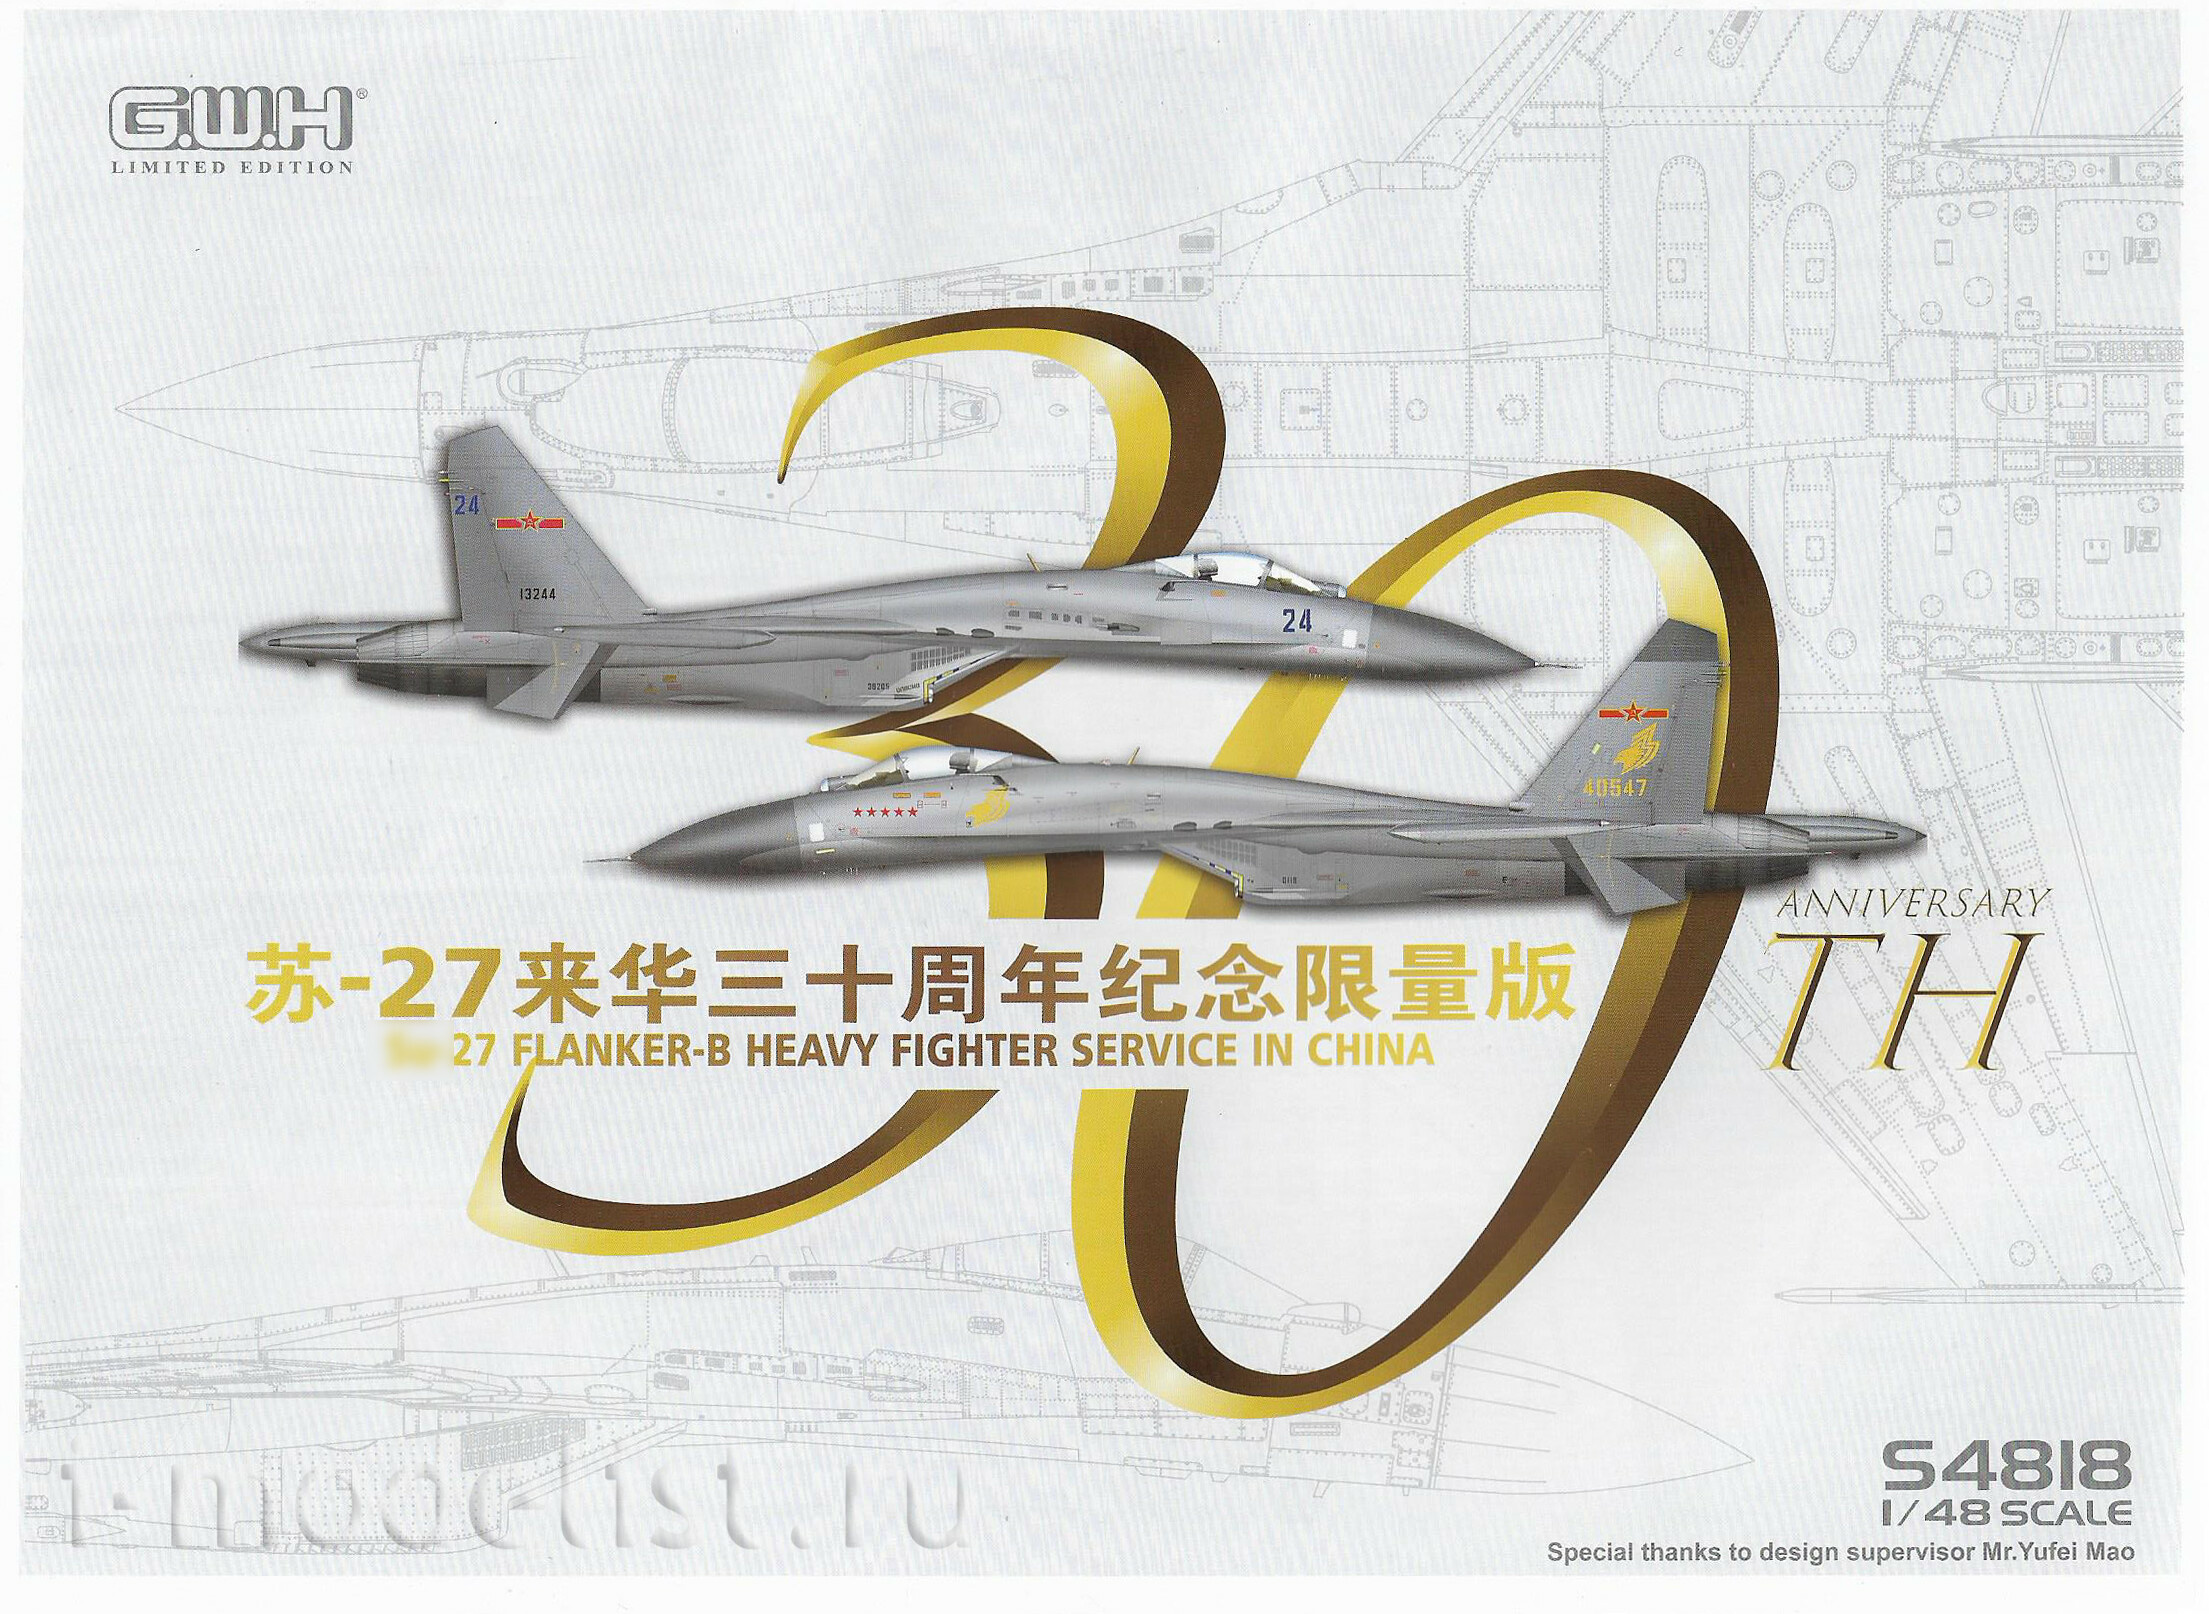 S4818 Great Wall Hobby 1/48 Истребитель Суххой-27 Flanker-B ВВС Китая (30 лет службы)